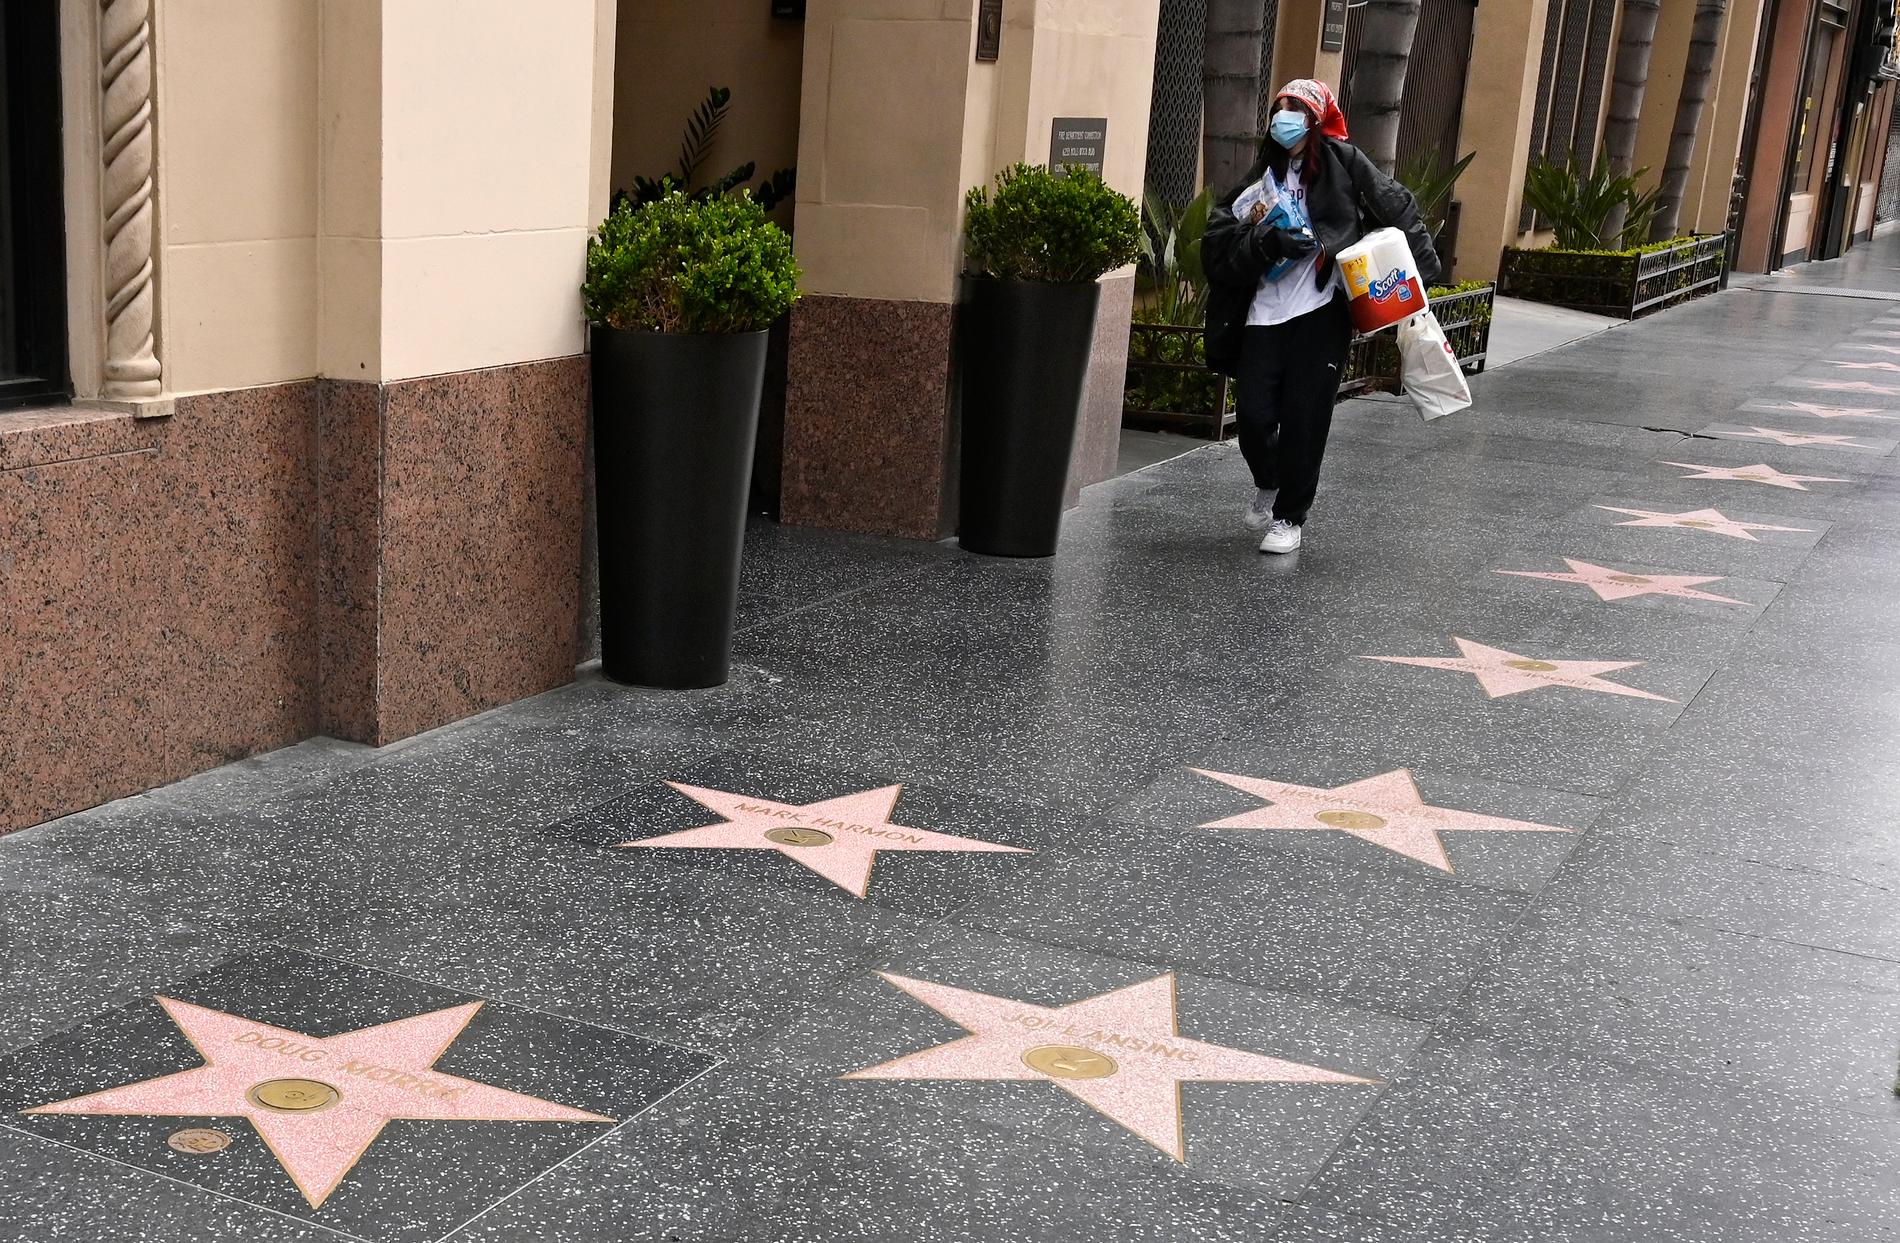 Hollywoods Walk of fame utökas med ytterligare en stjärna, den här gången för att hylla en musiker. Arkivbild.